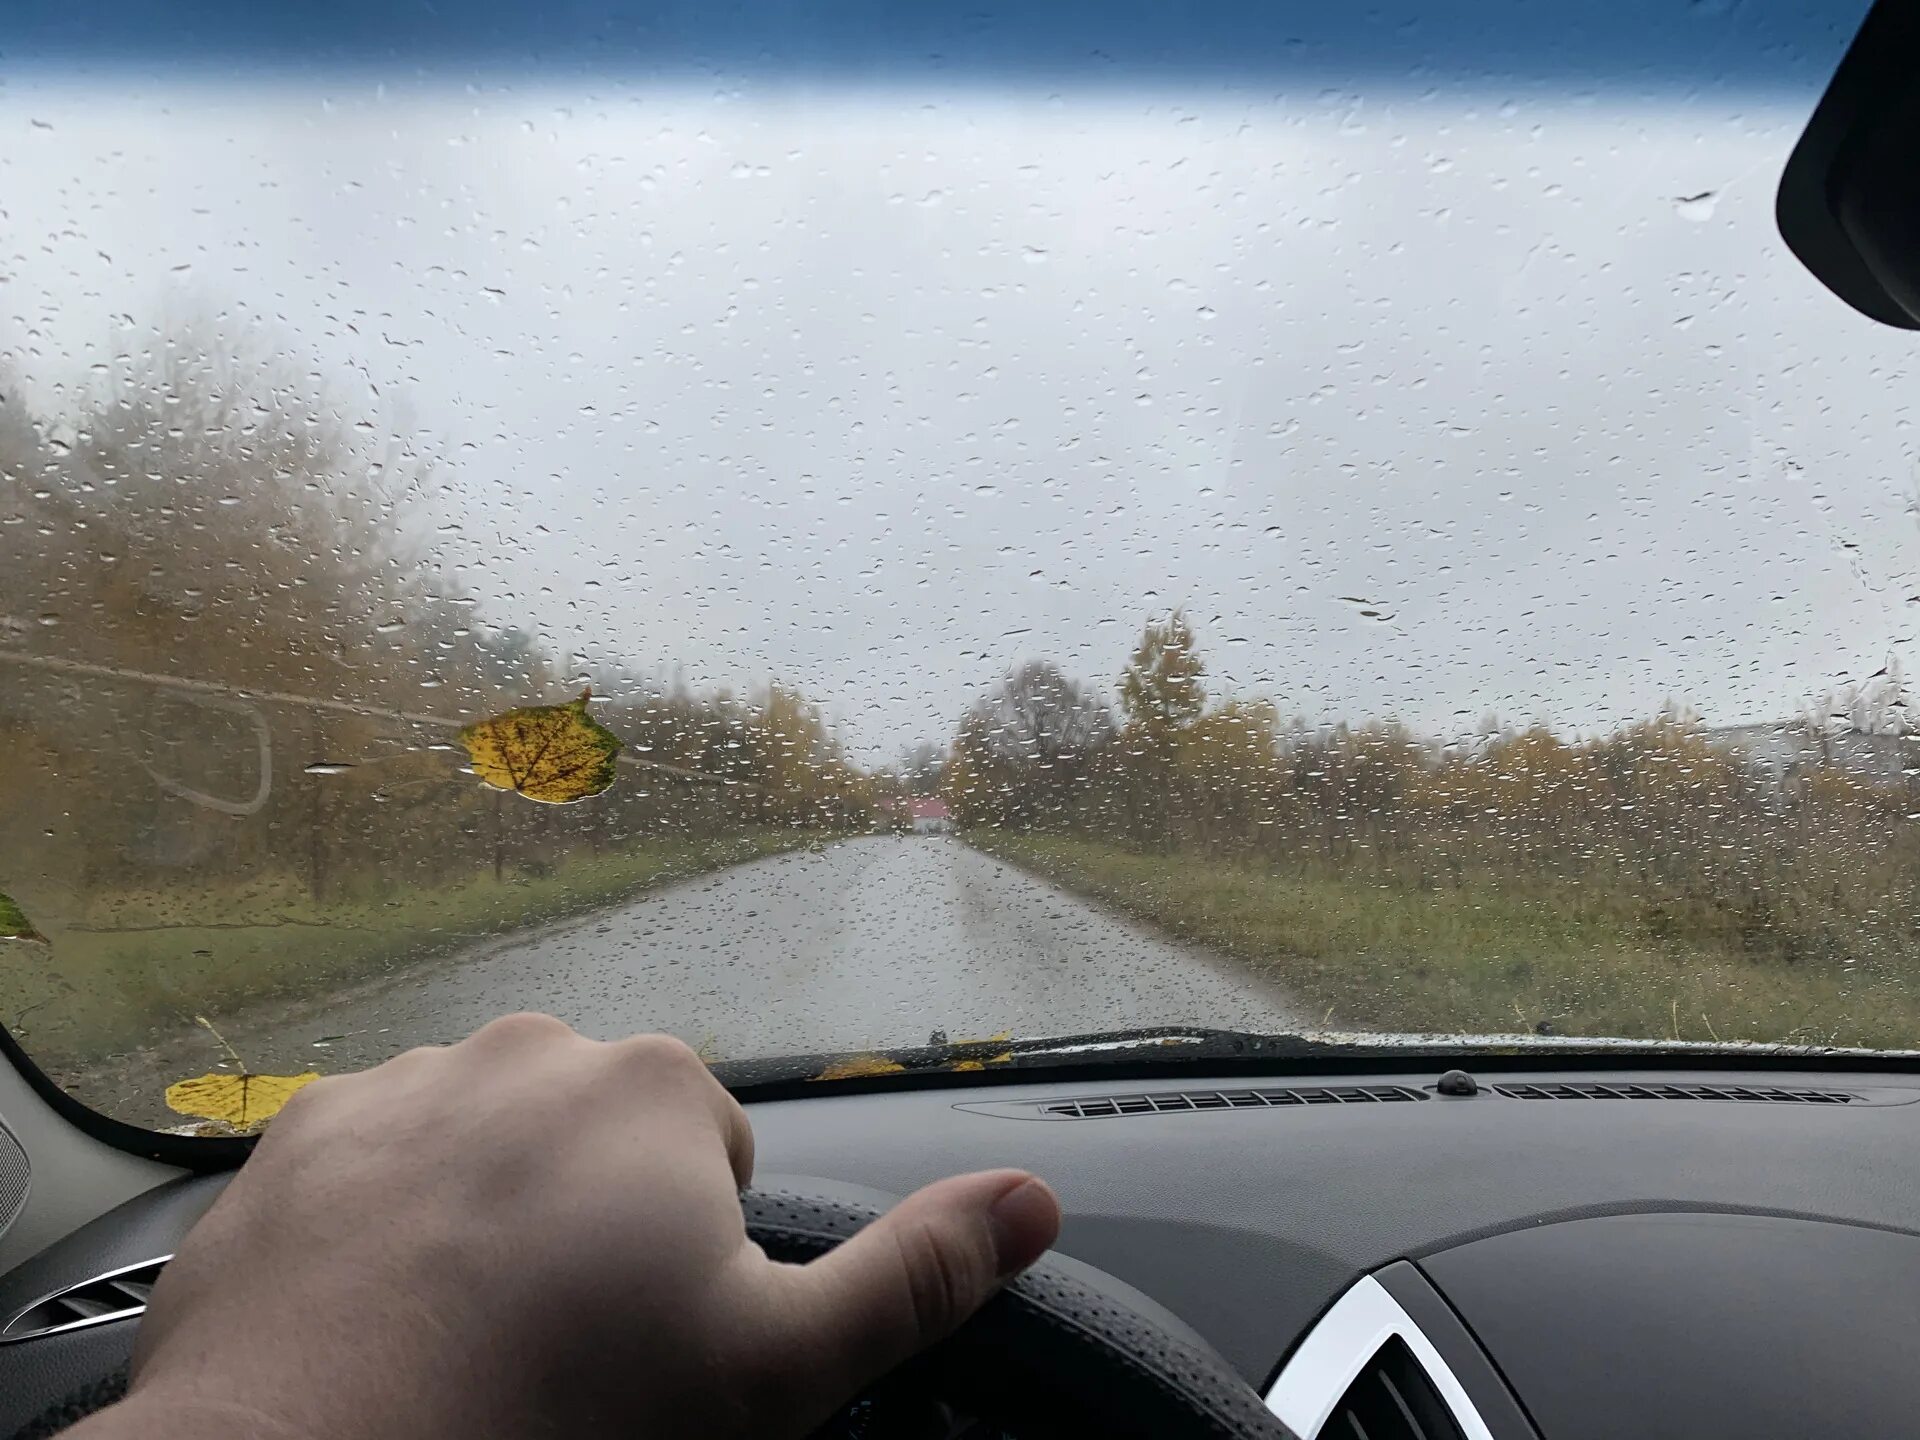 Машина запотевает в дождь. Запотевшие стекла автомобиля. Запотевшие окна в машине. Запотевшее стекло в машине. Стеклопакет вместо лобового стекла.